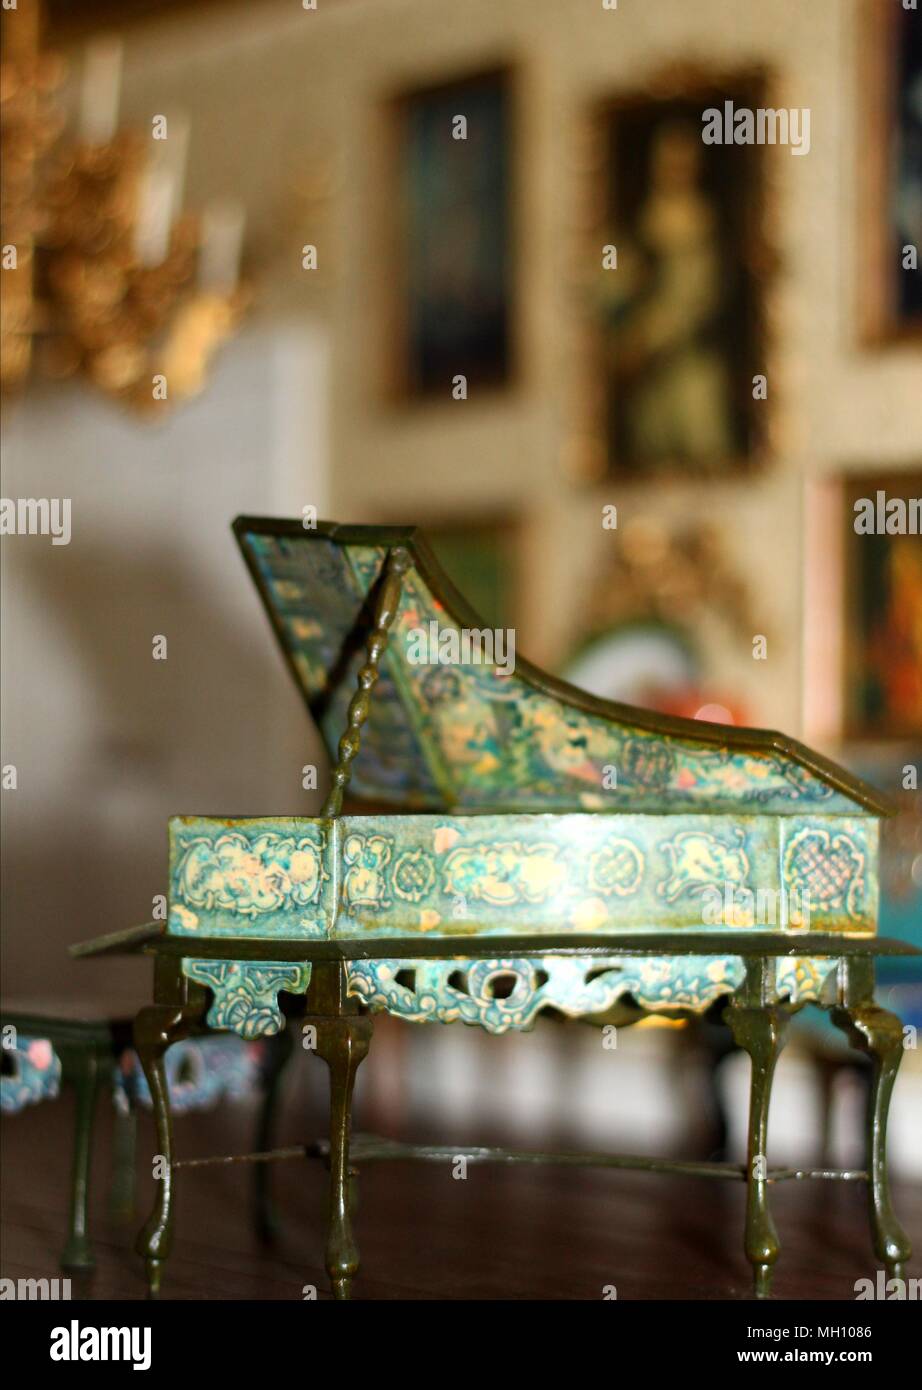 Klavier mittelbraun mit Deckel Puppenstube Miniatur 